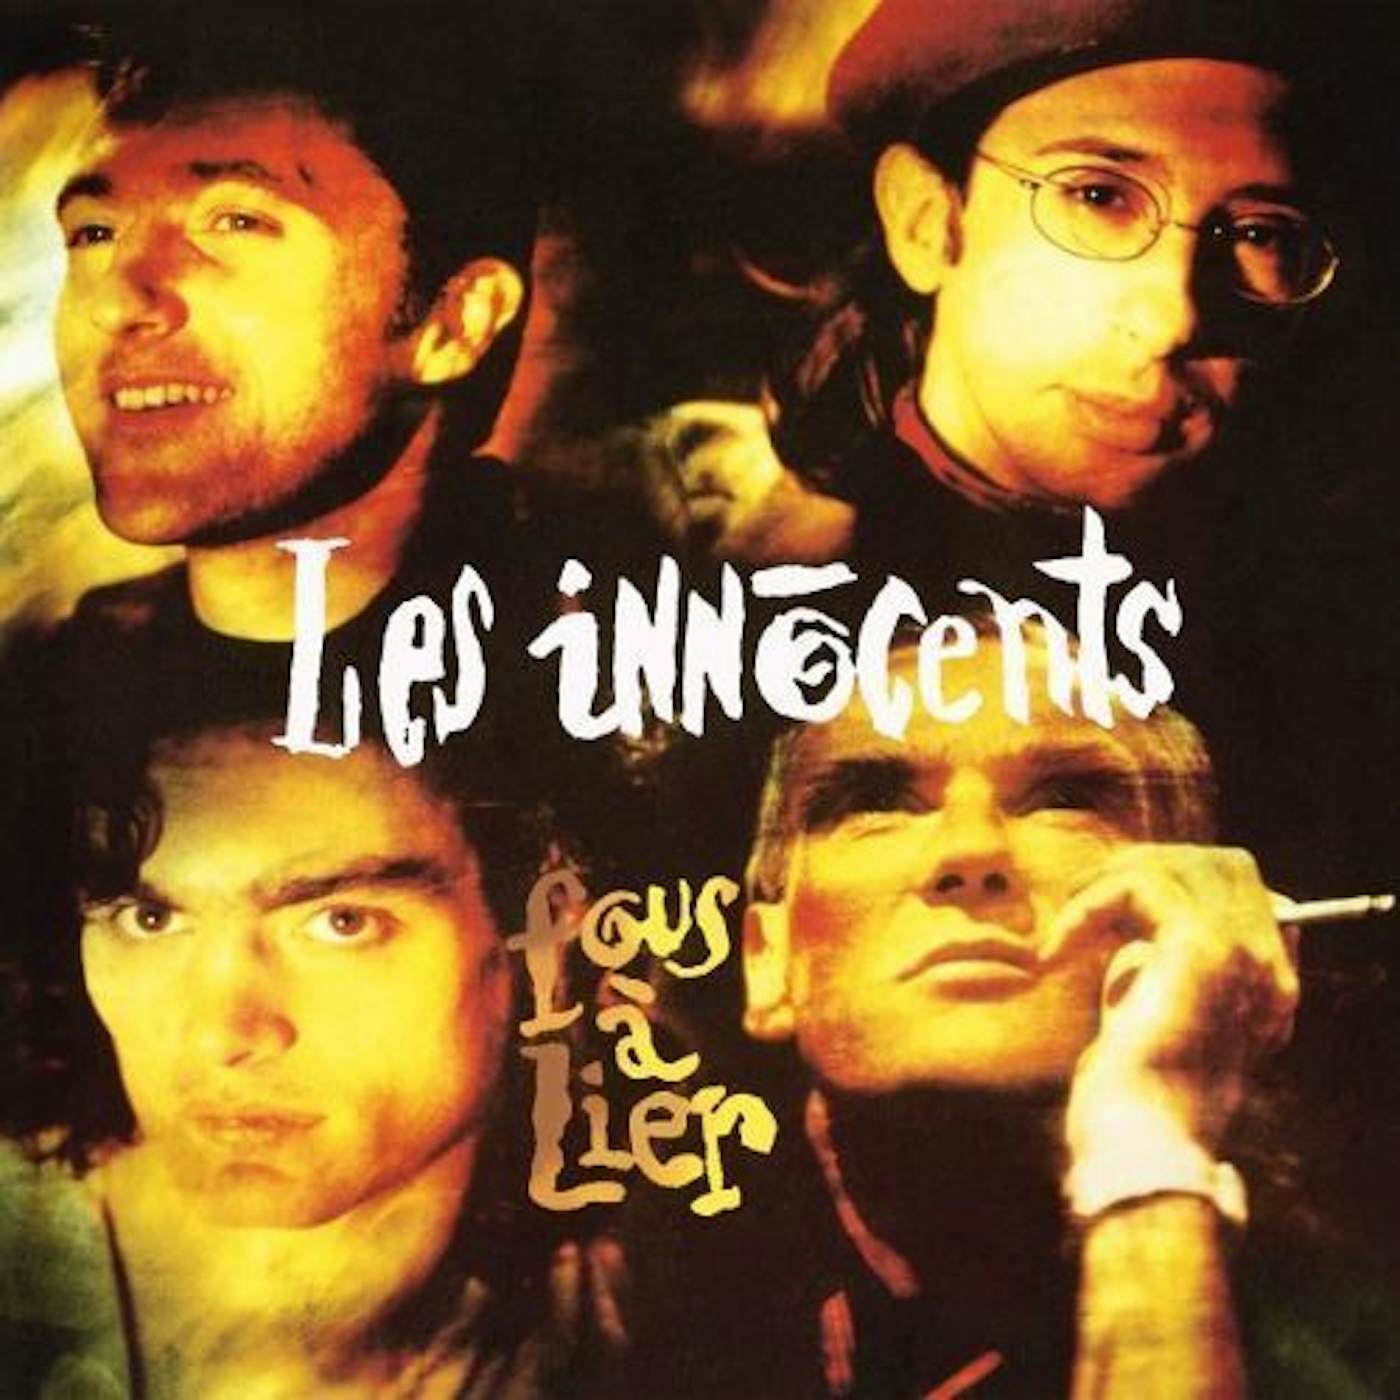 Les Innocents Fous a lier lp Vinyl Record